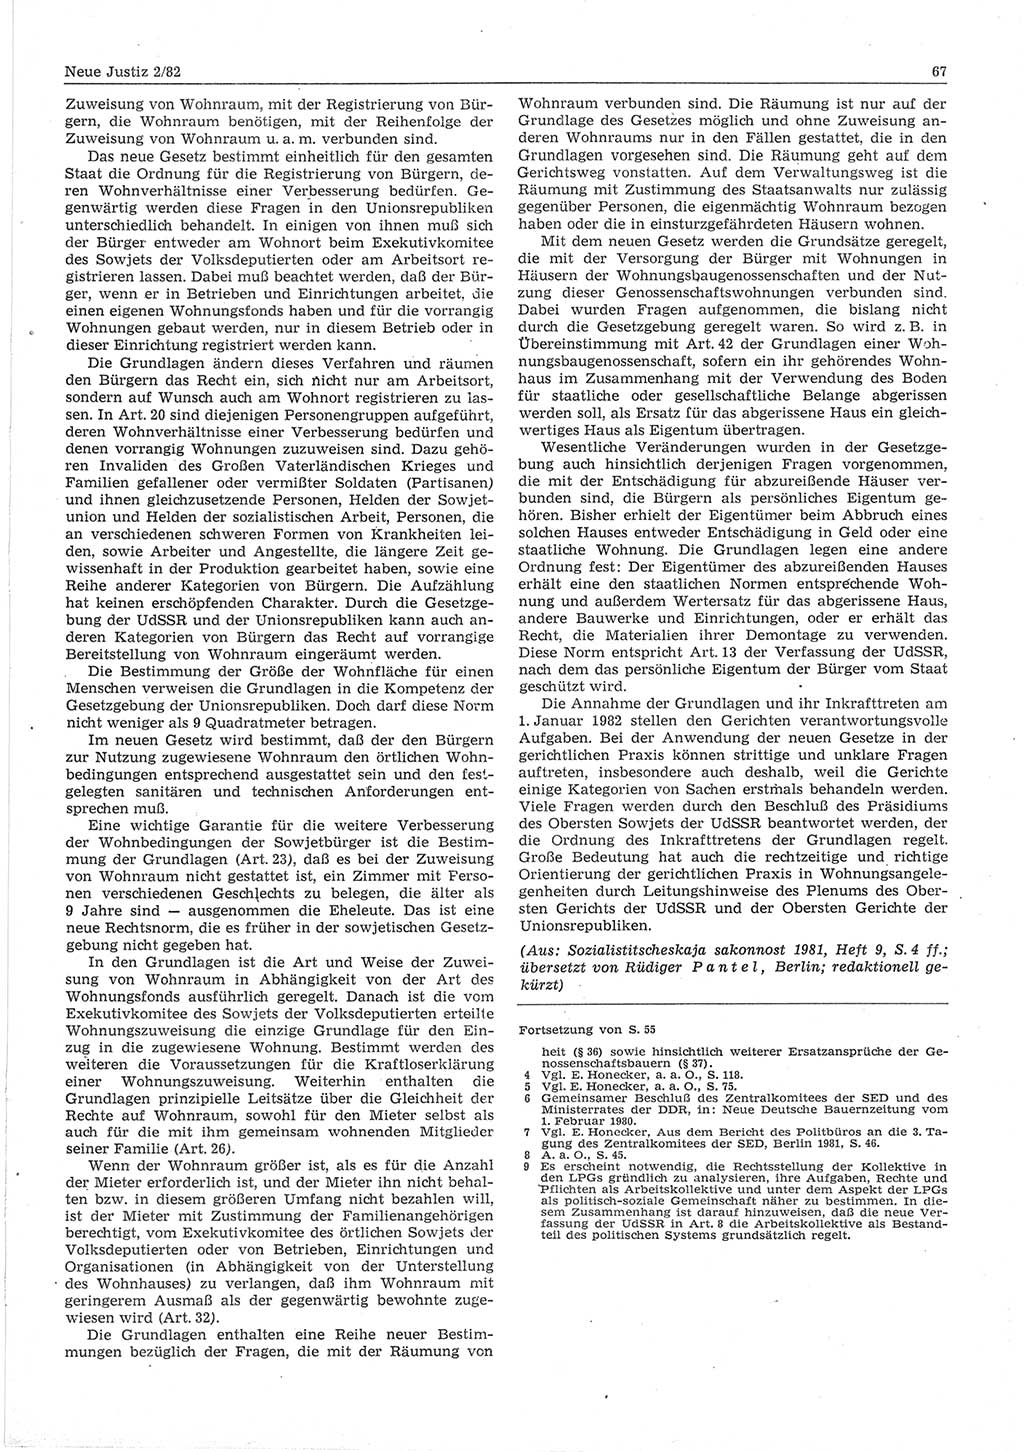 Neue Justiz (NJ), Zeitschrift für sozialistisches Recht und Gesetzlichkeit [Deutsche Demokratische Republik (DDR)], 36. Jahrgang 1982, Seite 67 (NJ DDR 1982, S. 67)